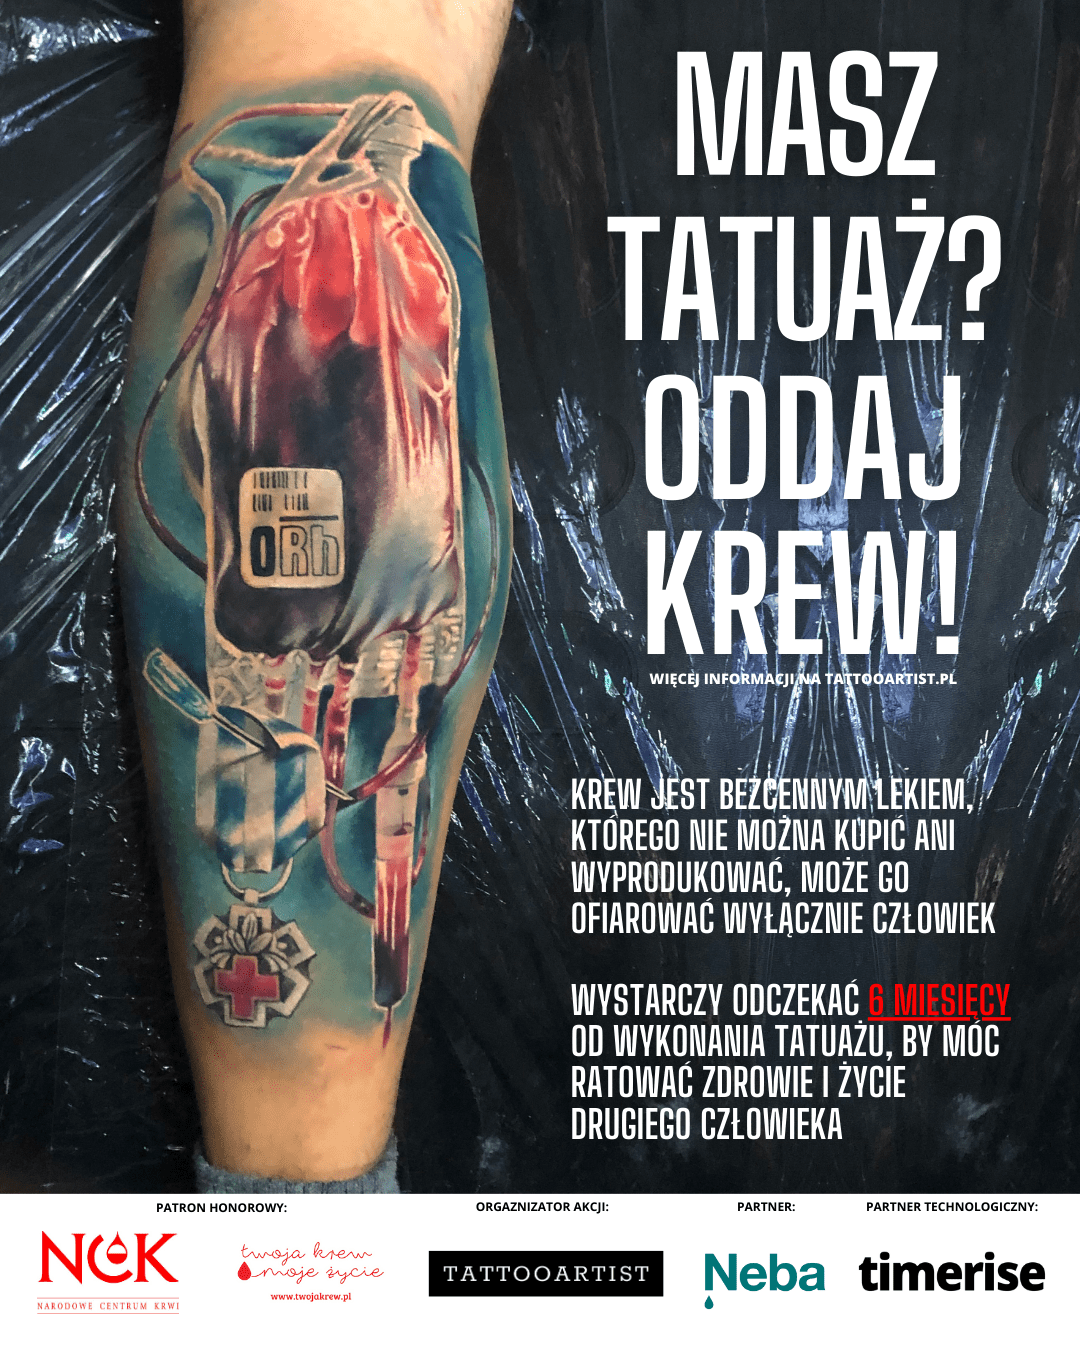 Masz tatuaż? Oddaj Krew! I wygraj tatuaż w trakcie Poznań Tattoo Konwent! [ZAPISZ SIĘ]